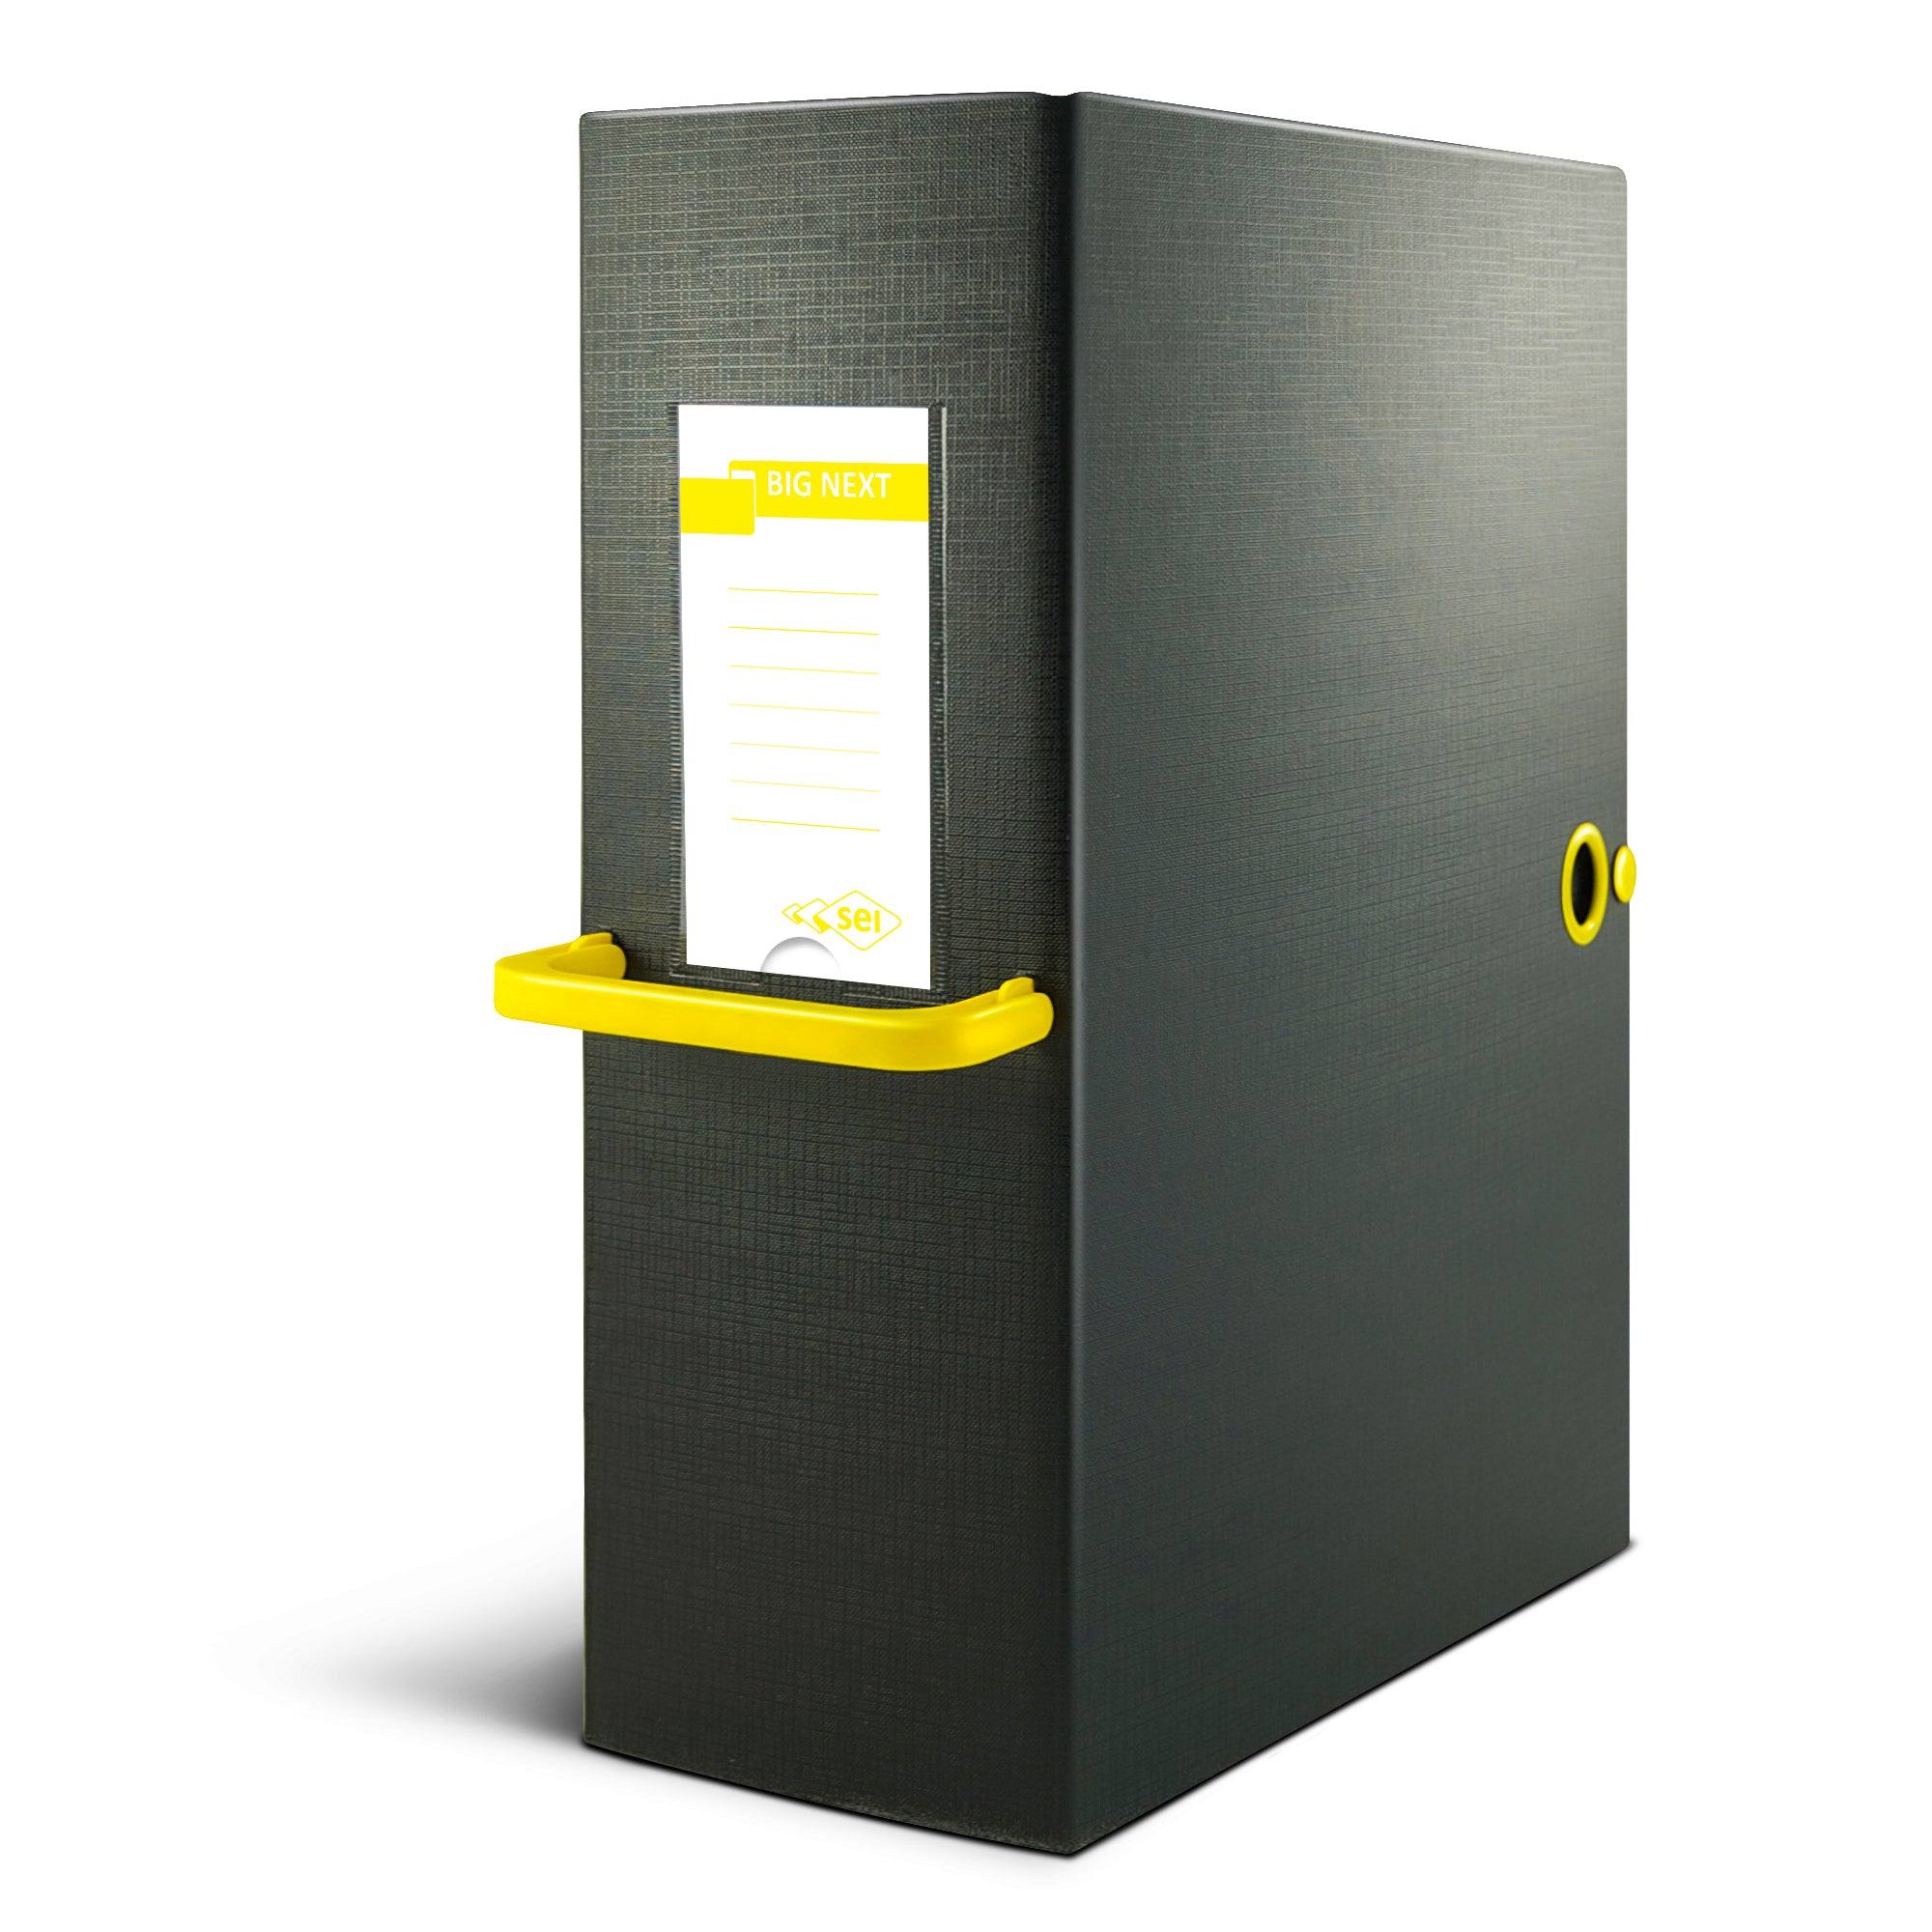 sei-rota-scatola-archivio-big-next-200-nero-giallo-25x35cm-dorso-20cm